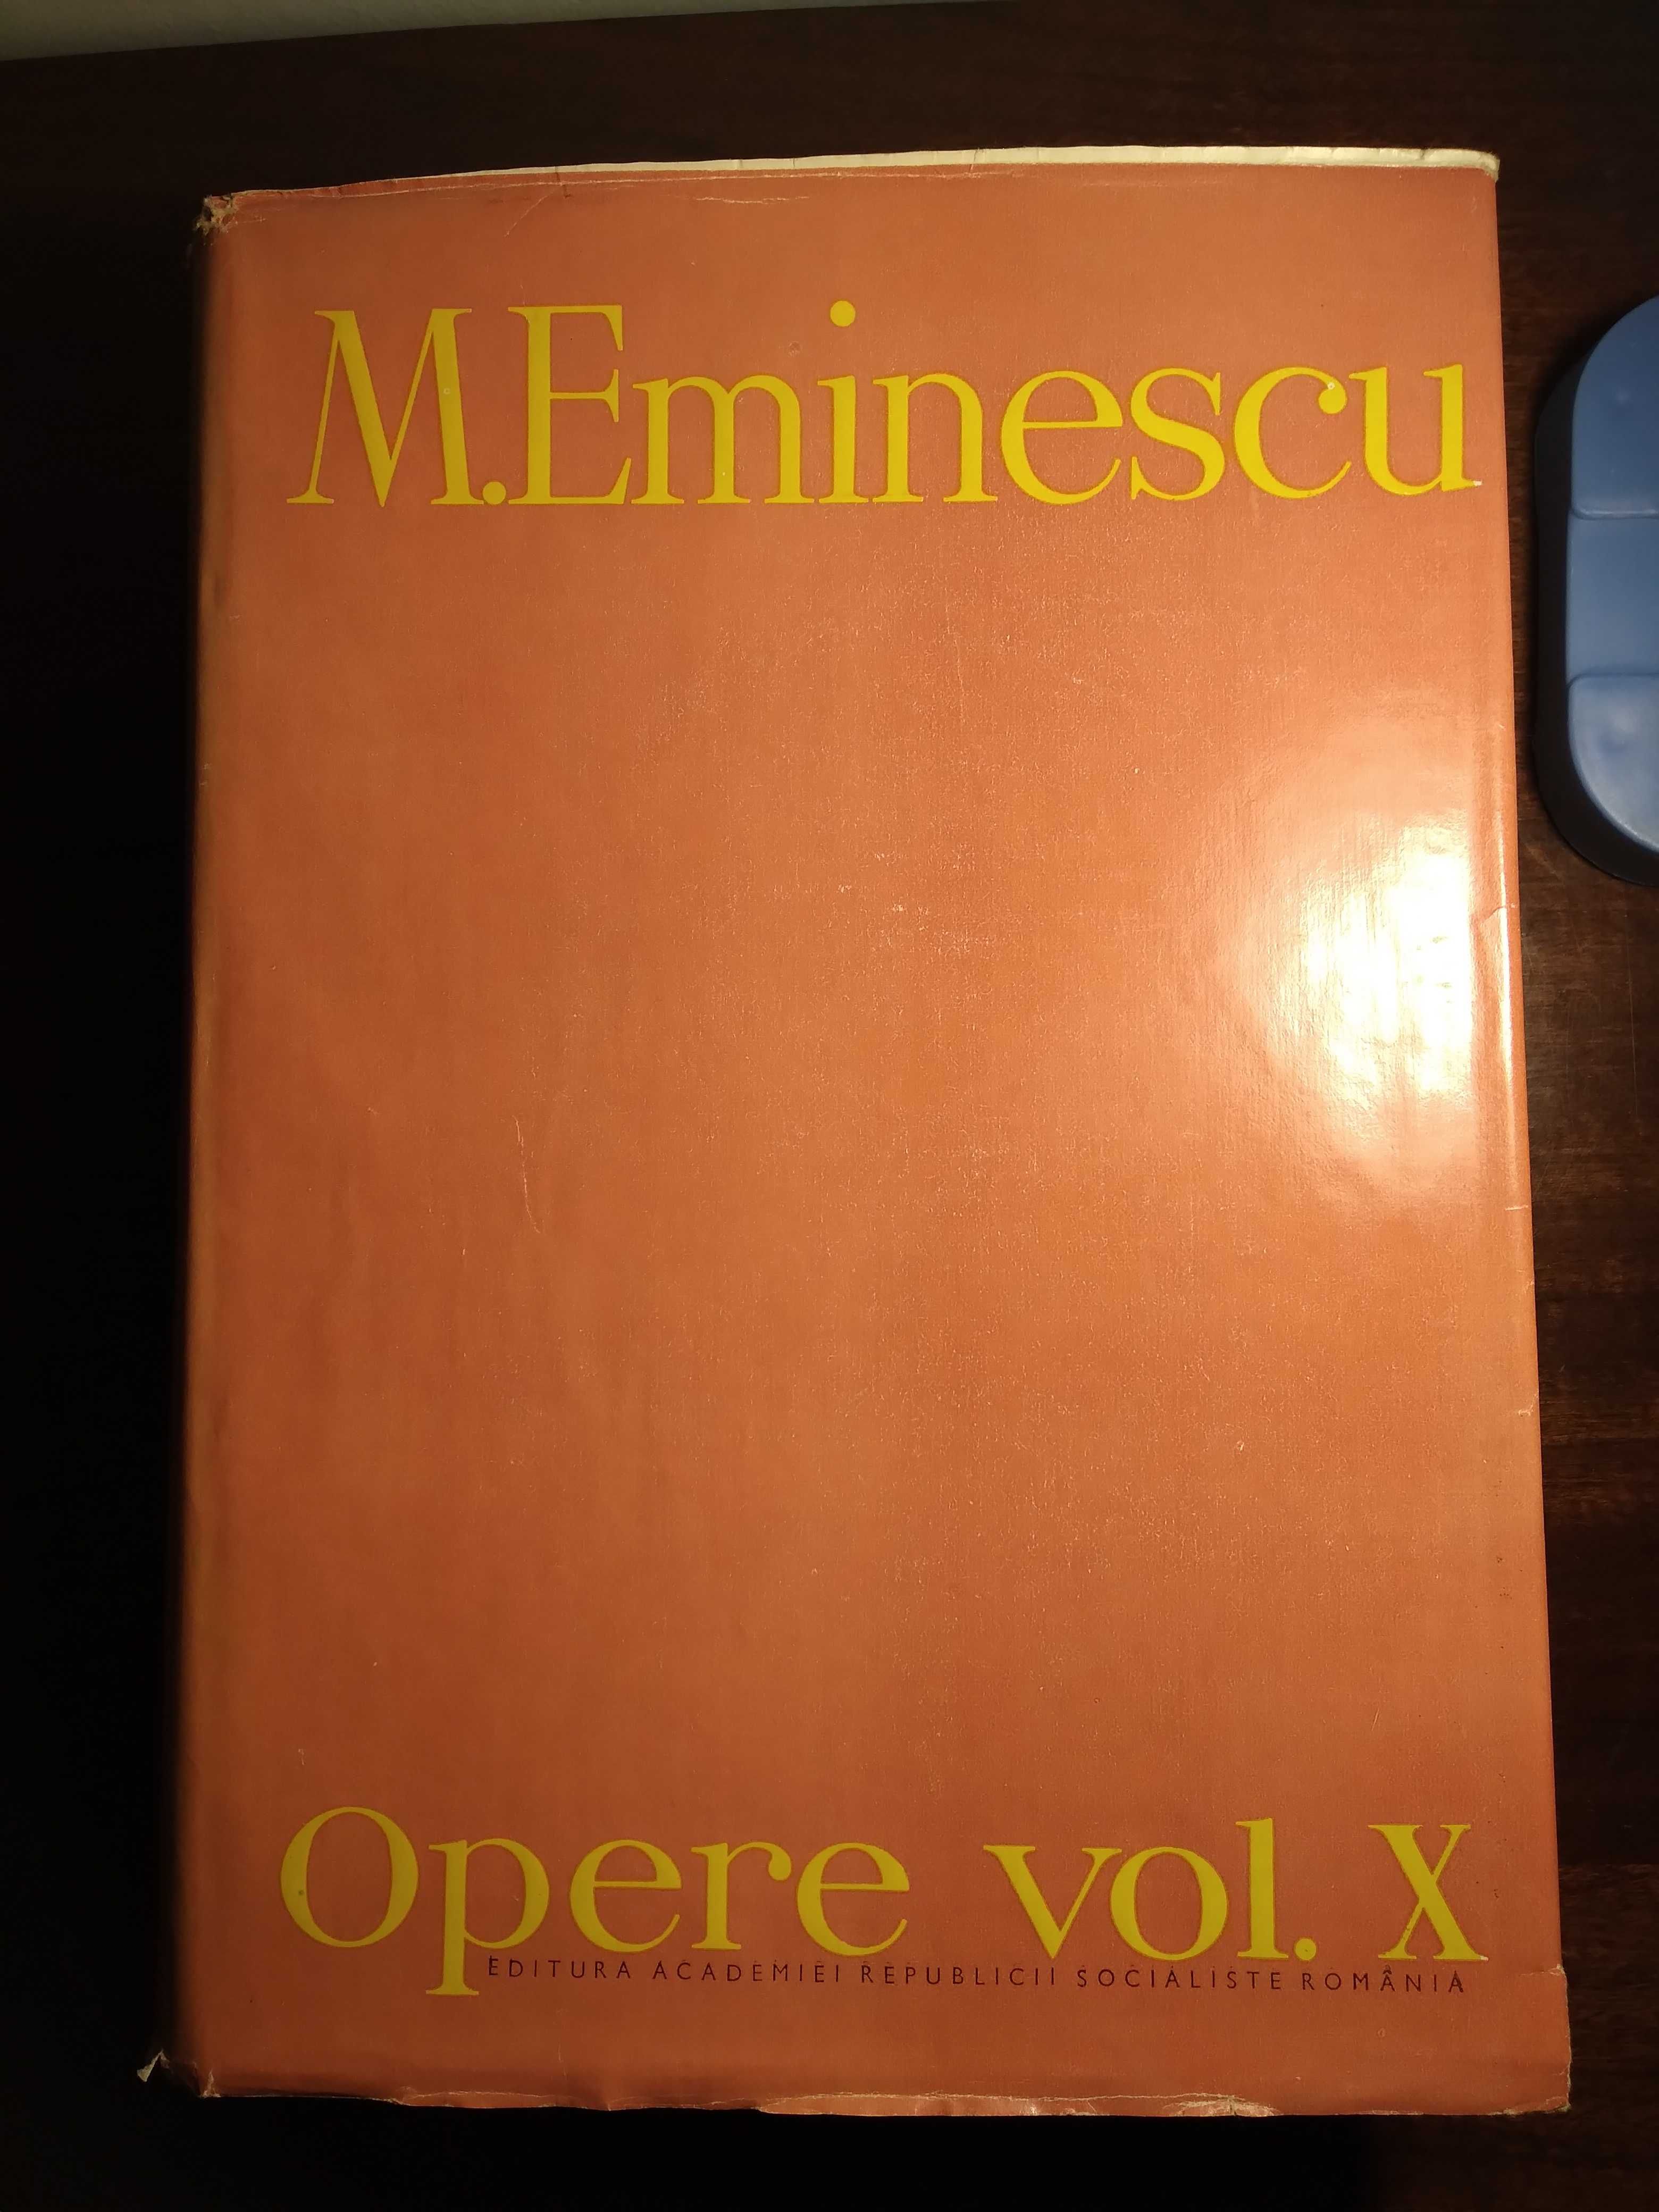 Volumul X din Operele lui Eminescu